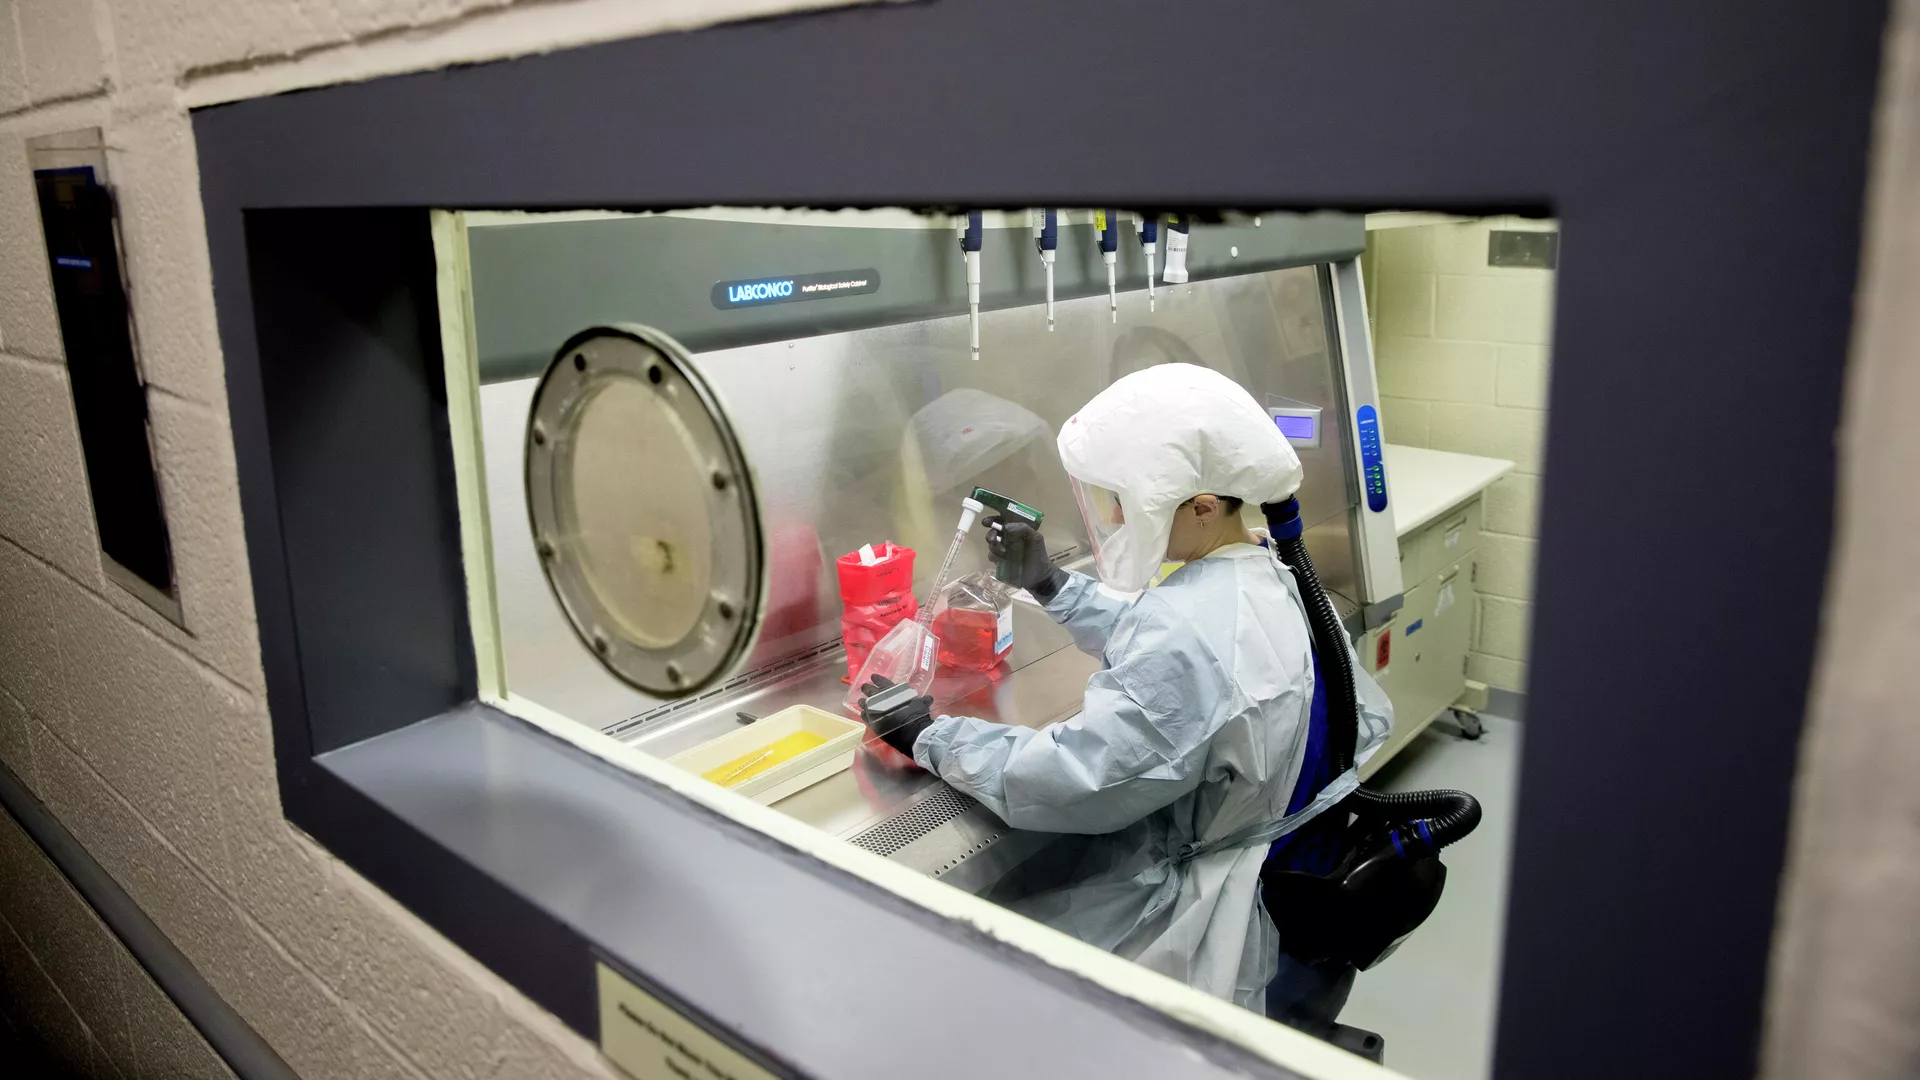 США нацелены на разработку универсального биооружия, показало расследование